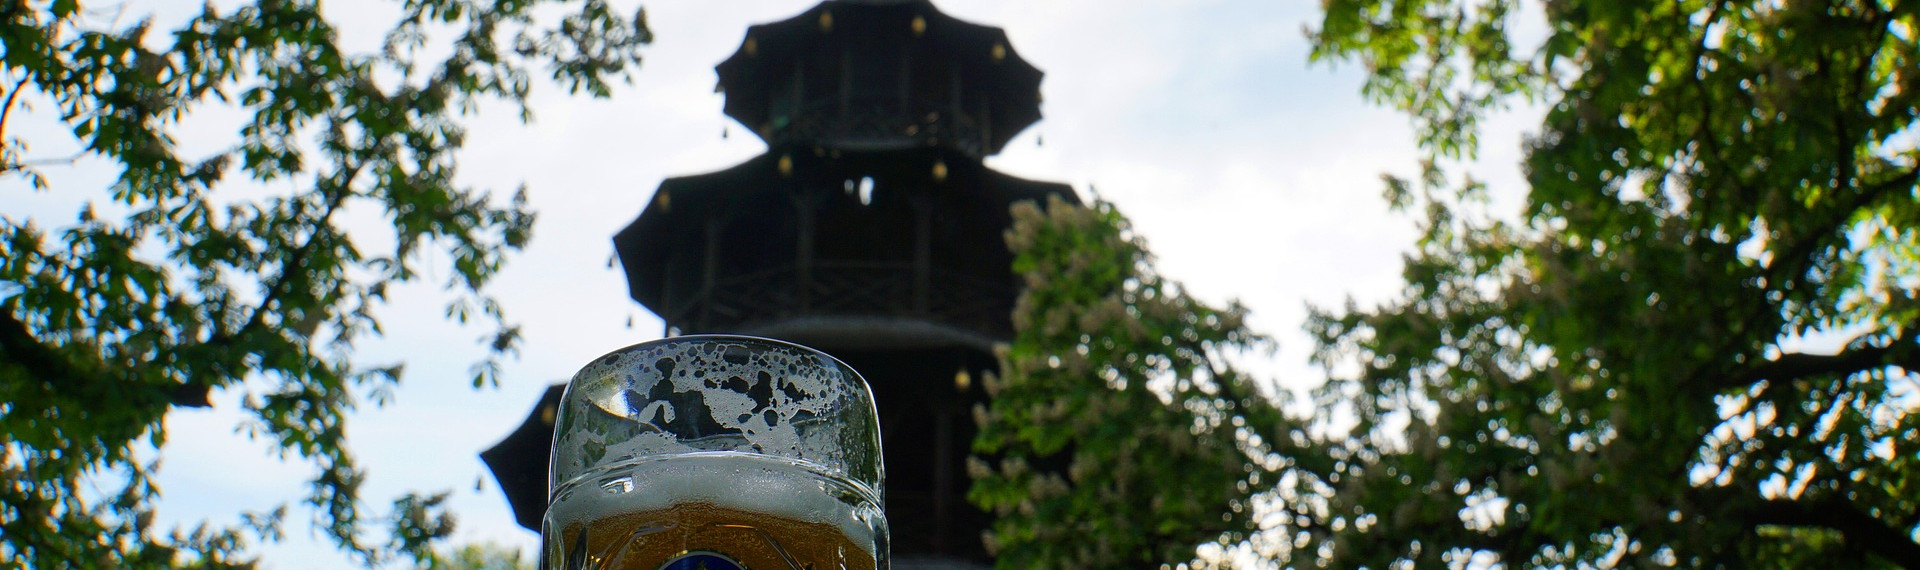 Biergarten Tour in München | Abenteuer mit Pissup Reisen